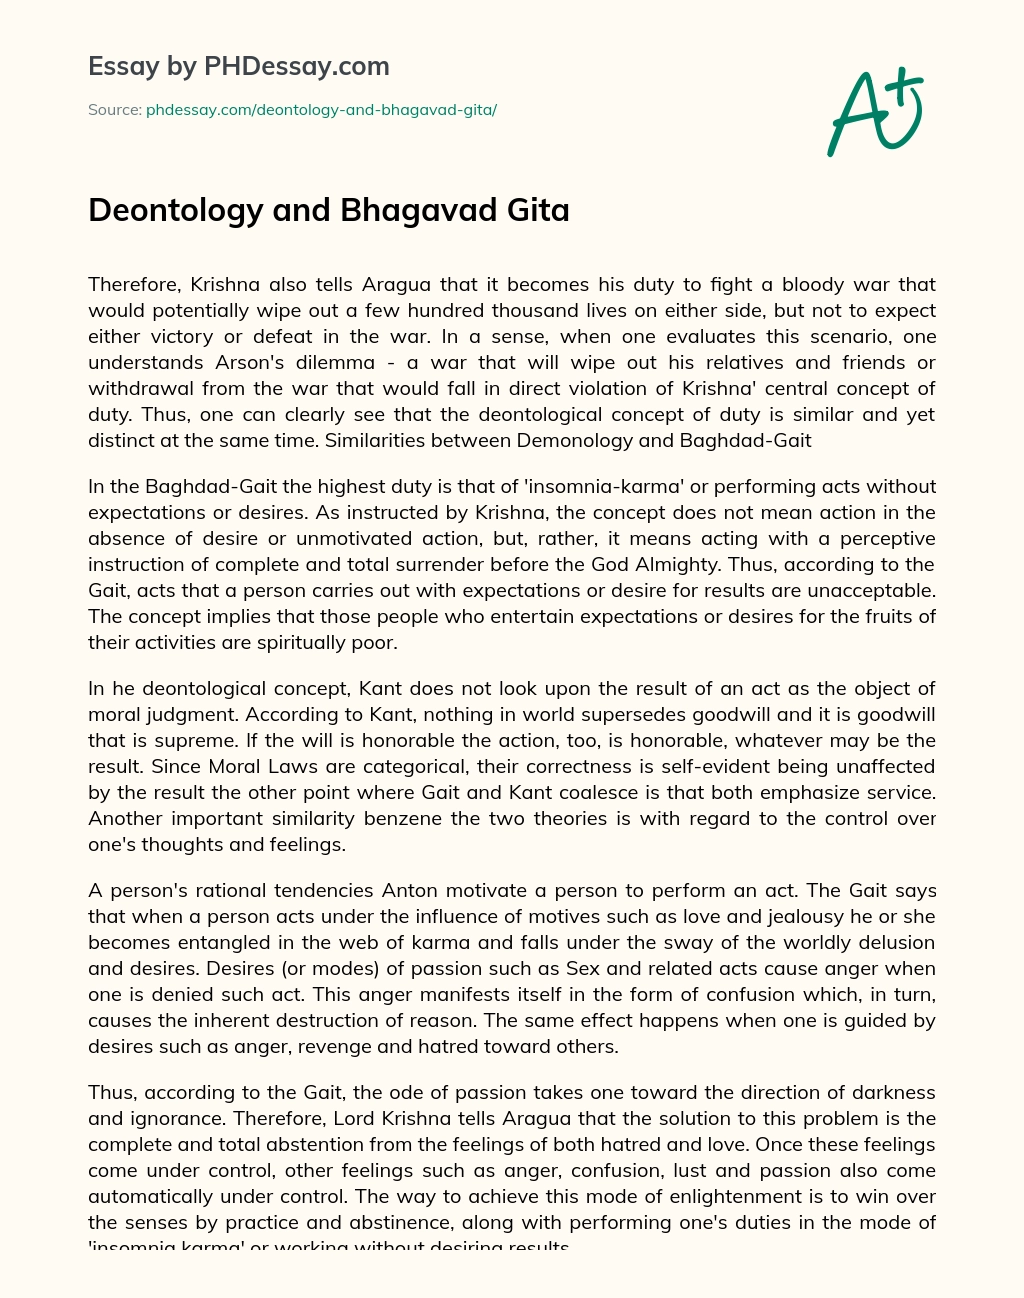 Deontology and Bhagavad Gita essay